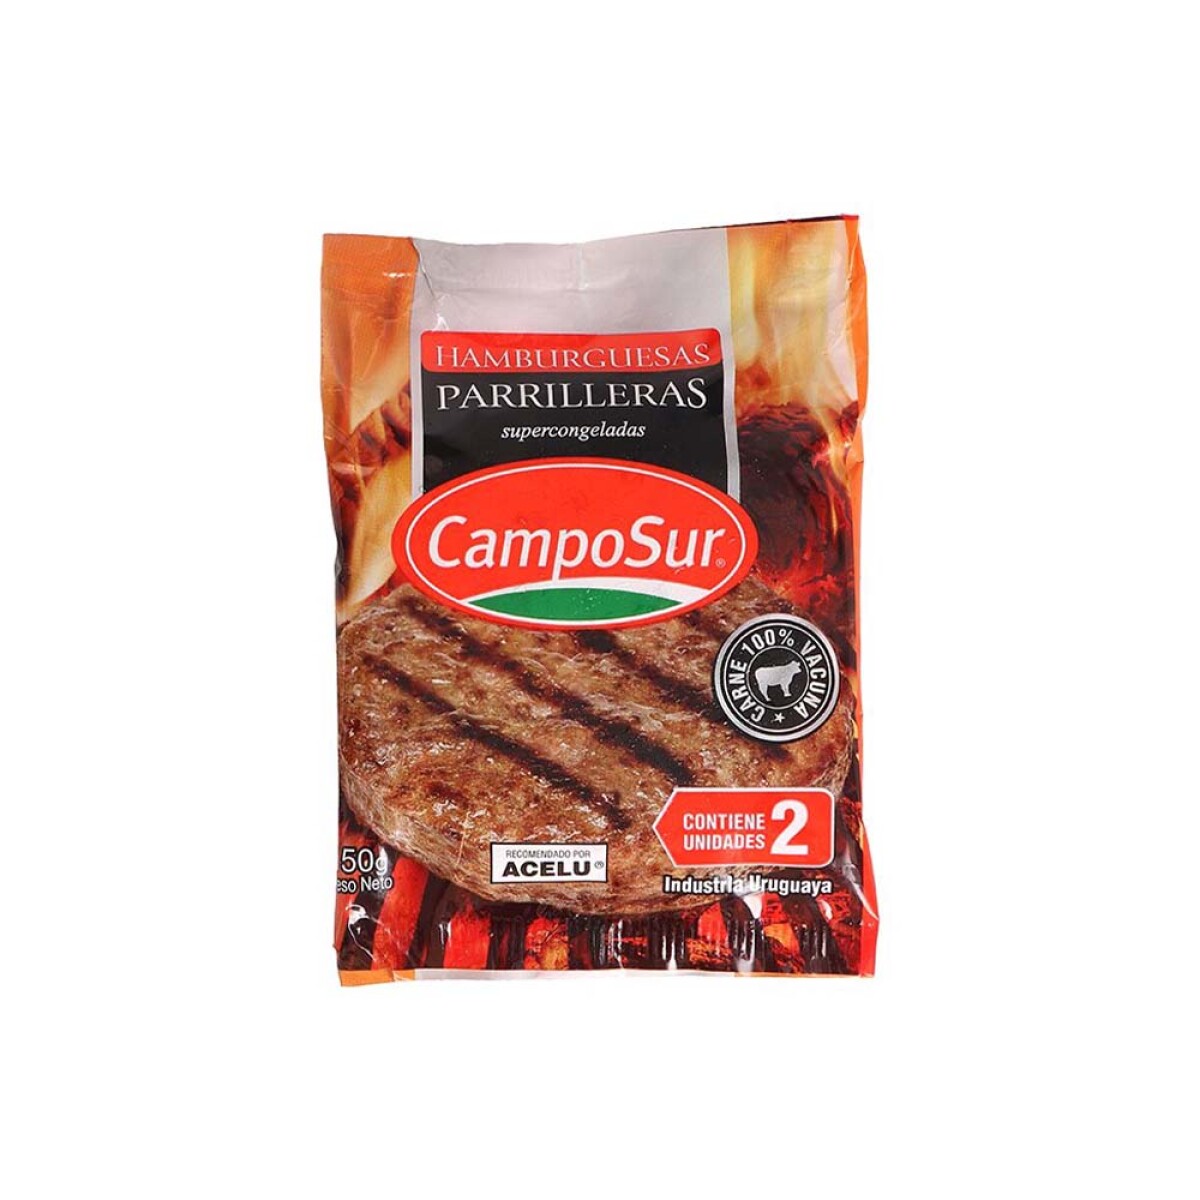 Hamburguesa Parrillera Camposur 2und. 